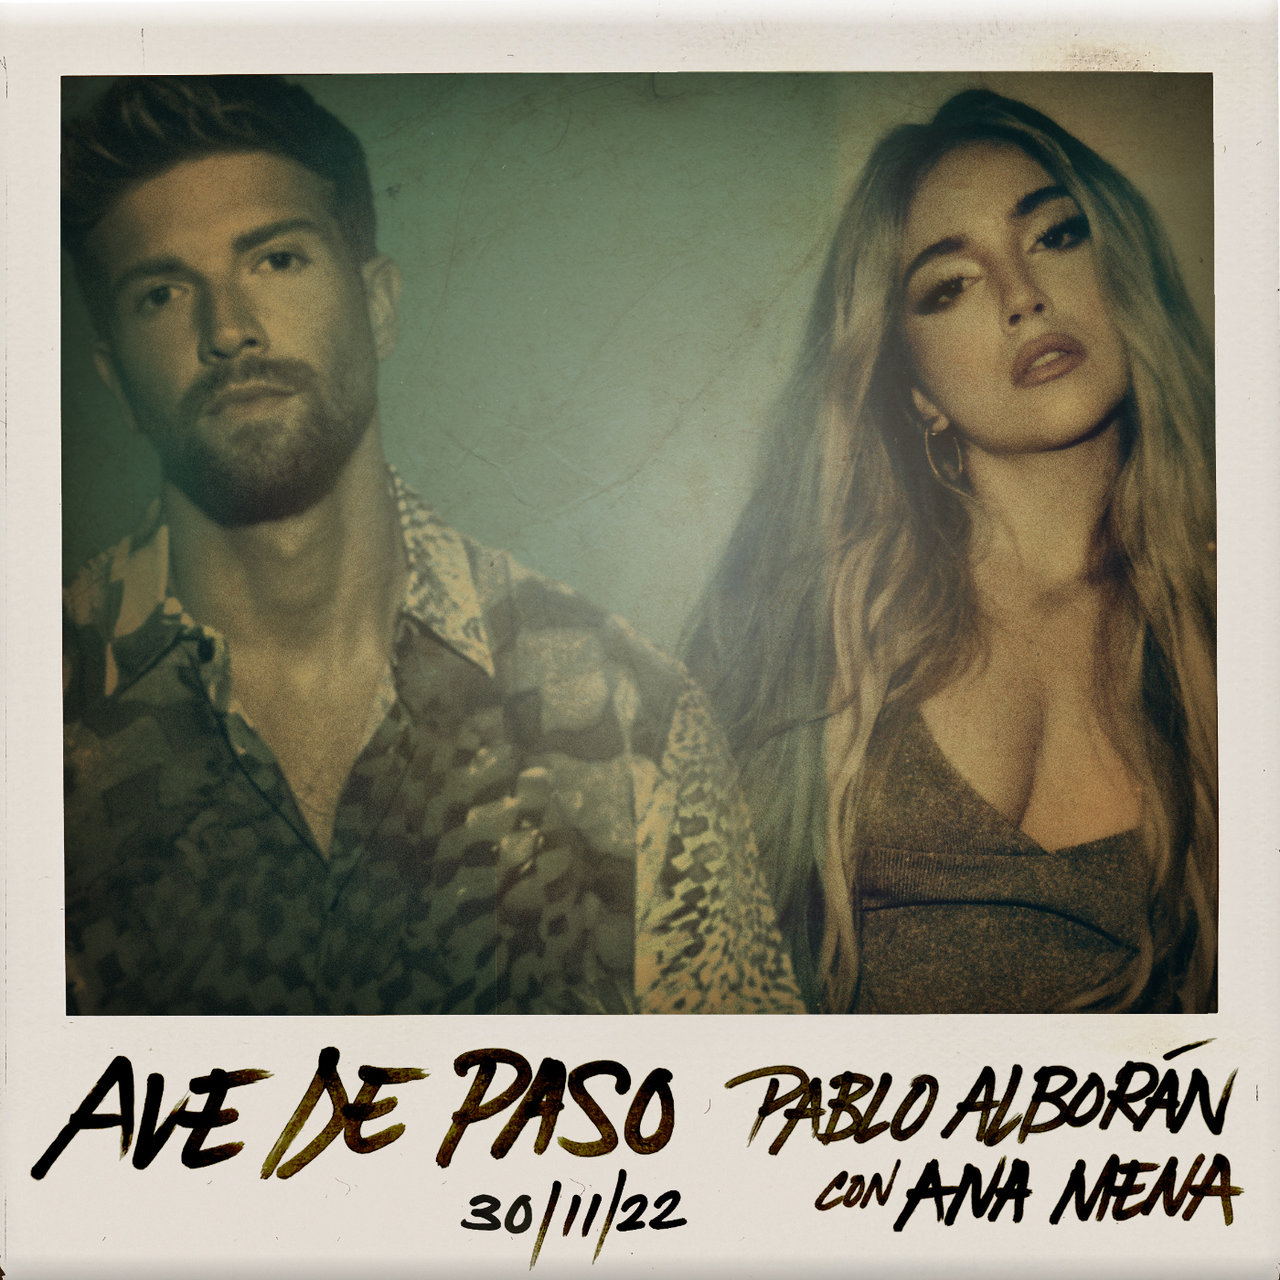 Pablo Alborán & Ana Mena — Ave de paso cover artwork